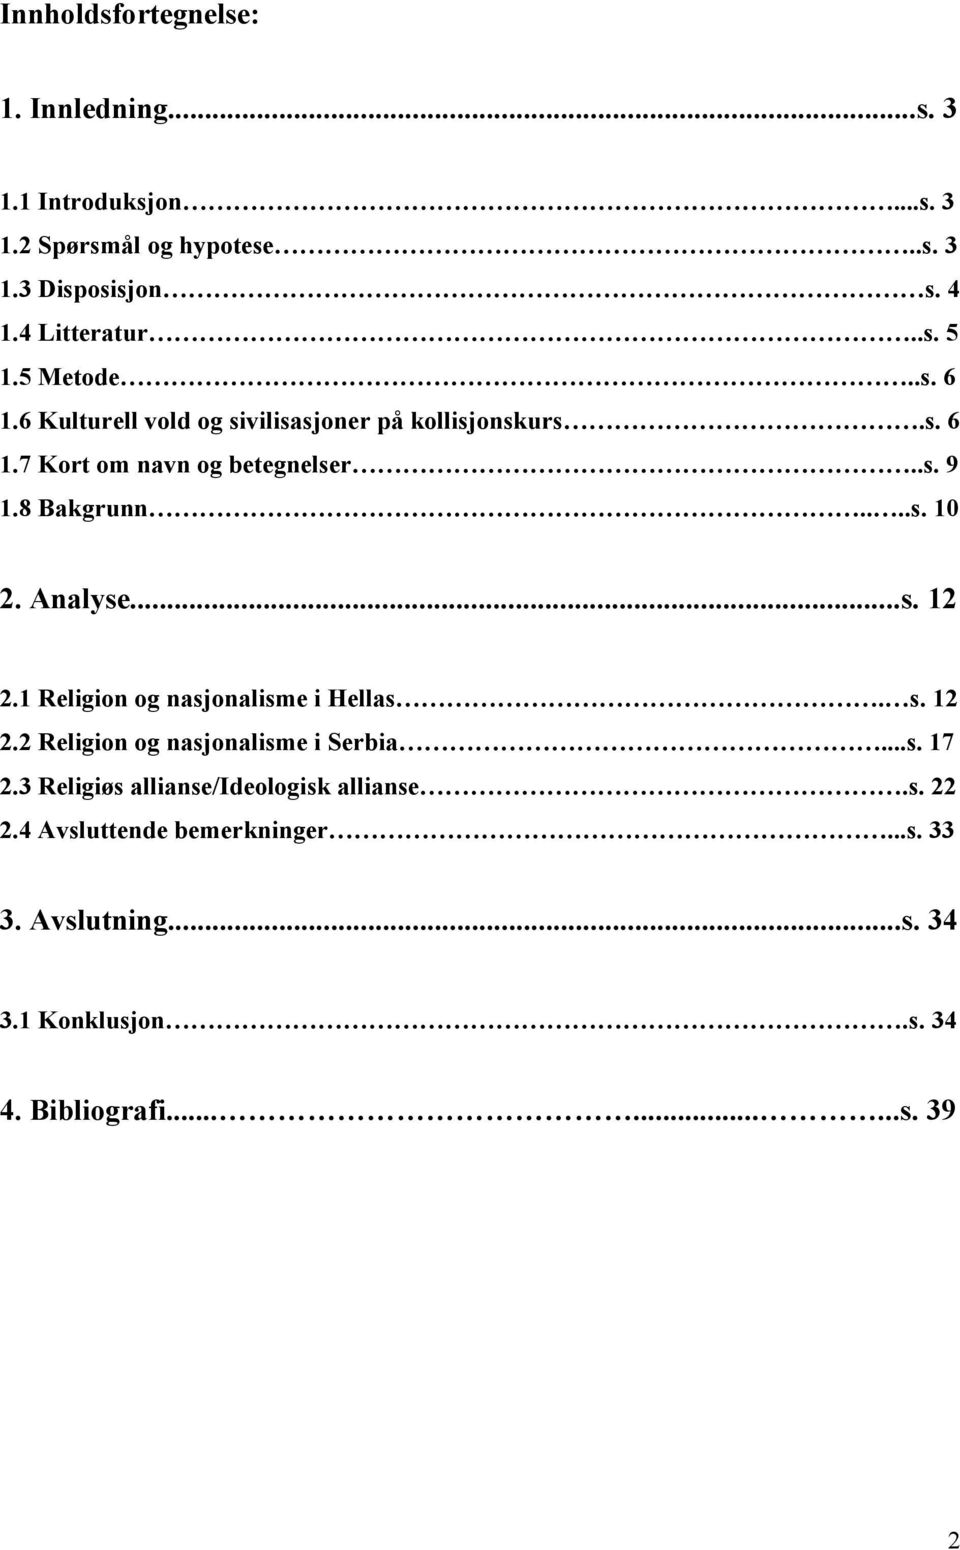 Analyse...s. 12 2.1 Religion og nasjonalisme i Hellas. s. 12 2.2 Religion og nasjonalisme i Serbia...s. 17 2.